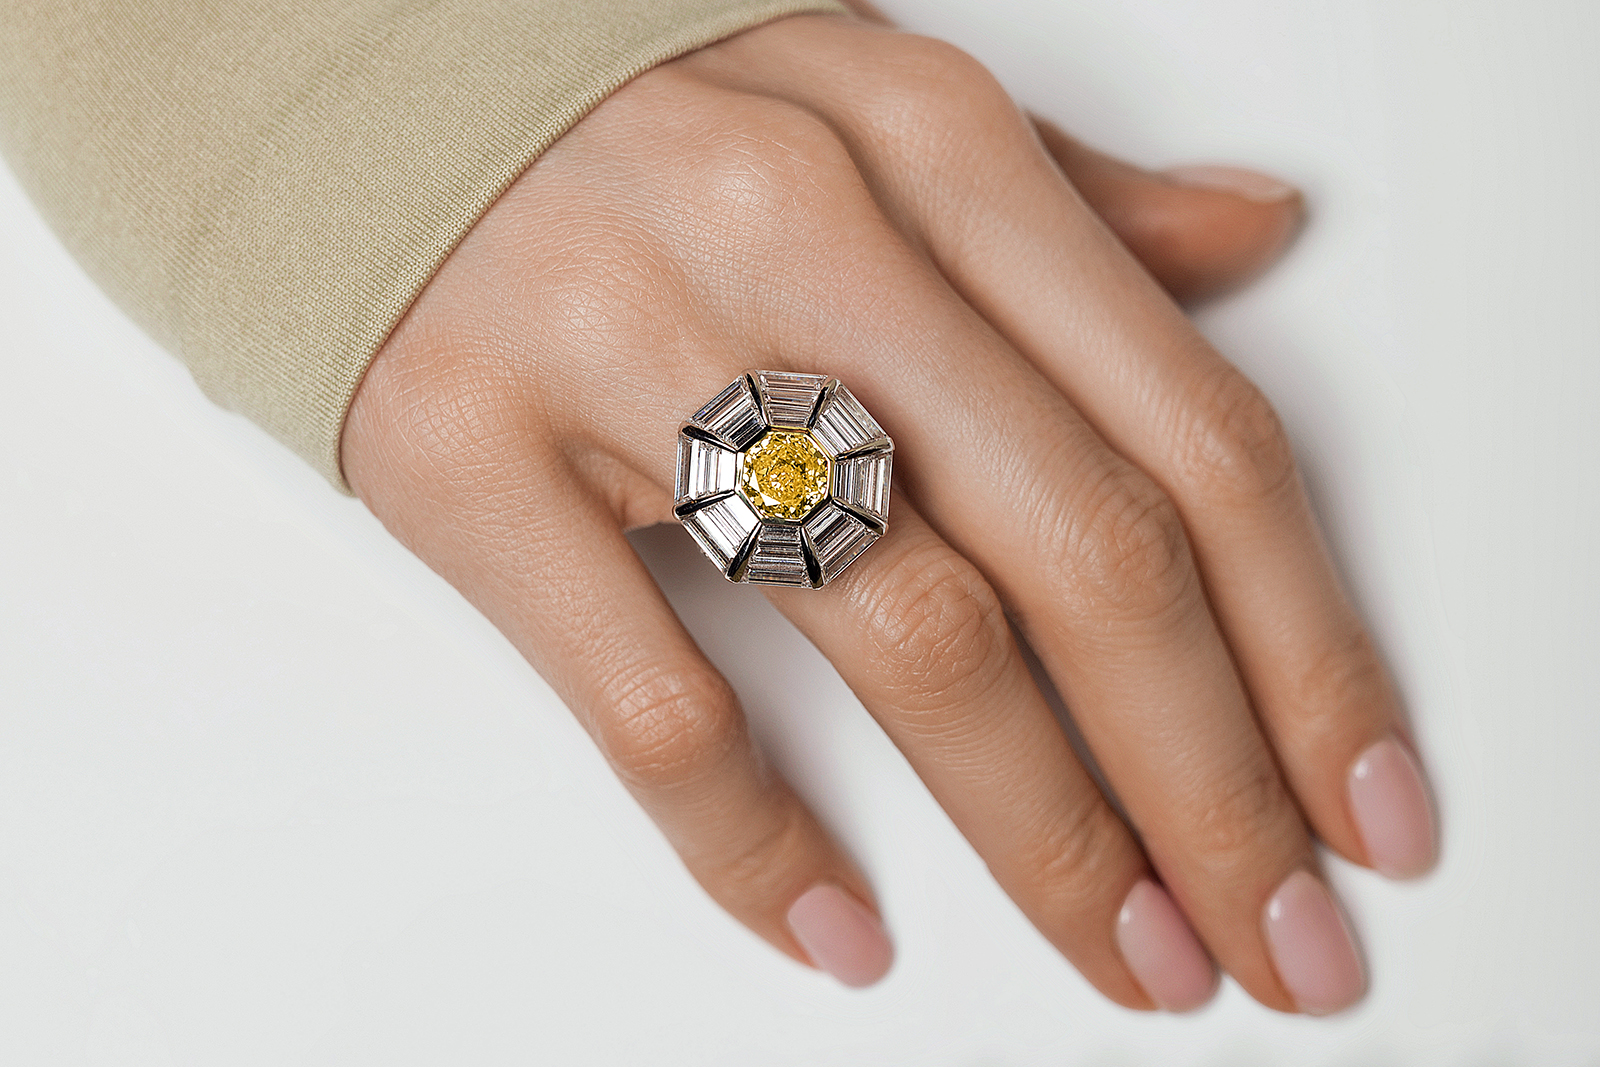 Кольцо Izmestiev Diamonds Chamomile из белого золота с ярким желто-оранжевым бриллиантом 2.66 карата и бесцветными бриллиантами огранки "багет" общим весом более 5 карат